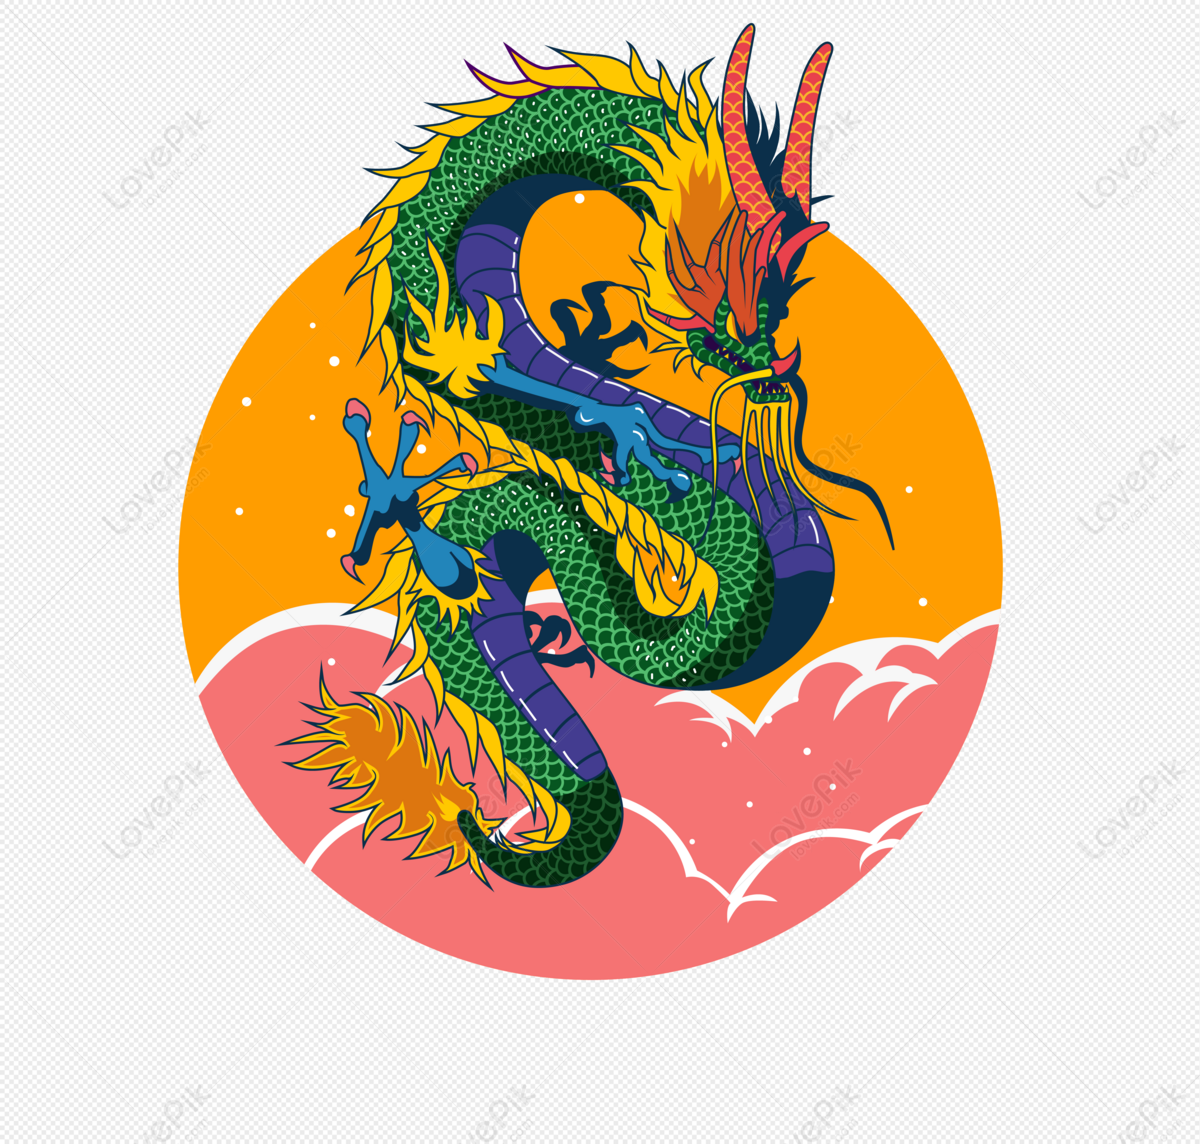 Vẽ Tay Nền Rồng Trung Quốc là một nghệ thuật đặc sắc đã có từ rất lâu đời. Từ những nét vẽ đơn giản đến những hình ảnh phức tạp, những bức tranh Rồng Trung Quốc luôn mang trong mình sự độc đáo và thu hút. Hãy cùng chiêm ngưỡng những bức tranh tuyệt đẹp này và khám phá thêm vẻ đẹp của nên tảo Trung Hoa.